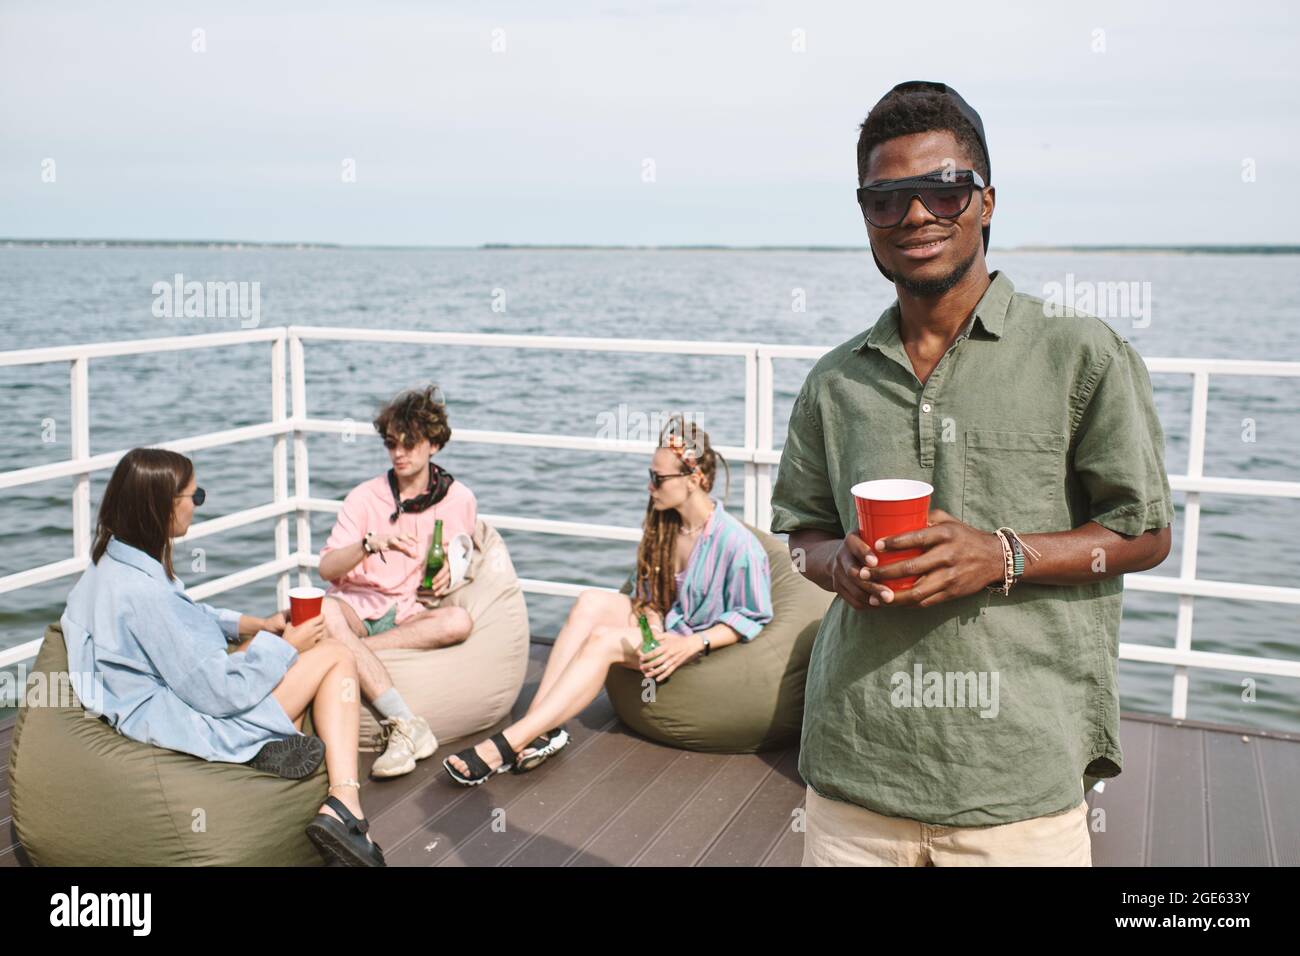 Junger schwarzer Mann, der auf einer Party am hölzernen Pier am See teilnimmt, trinkt Alkohol und schaut auf die Kamera Stockfoto